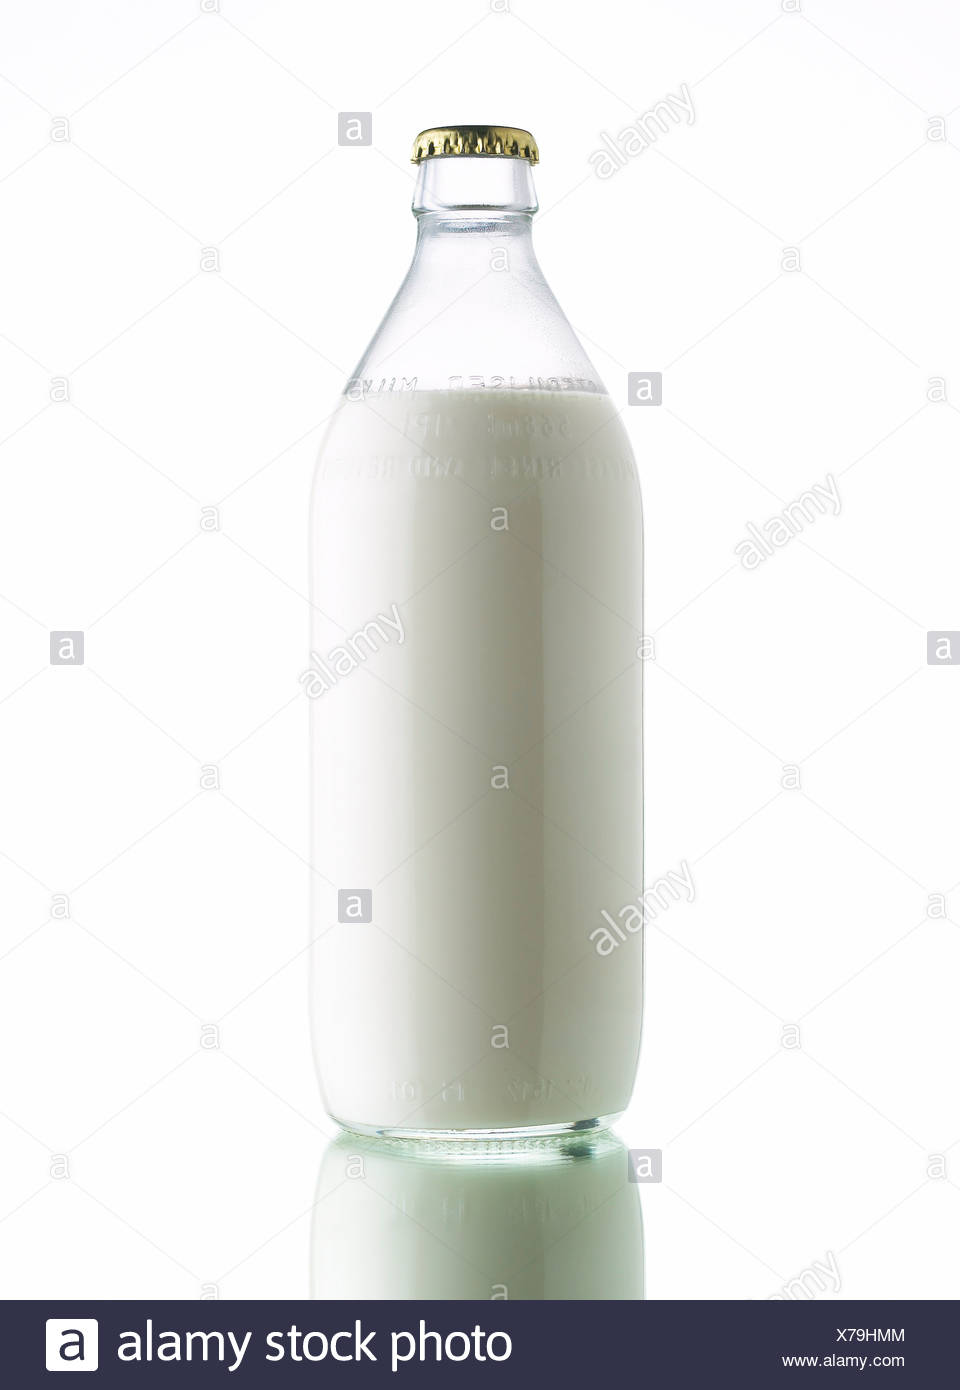 Bottle of sterilised milk Stock Photo 